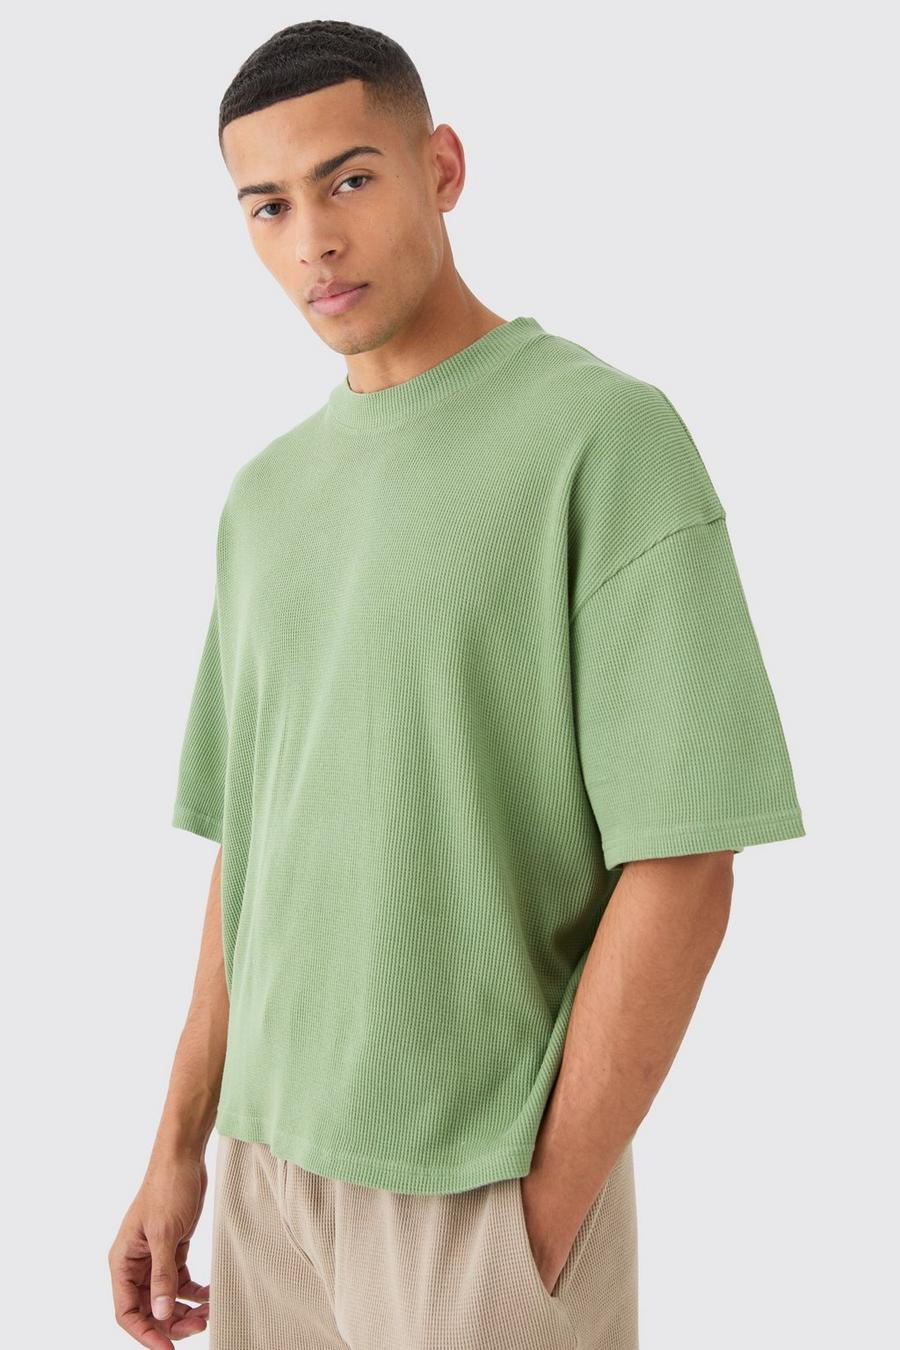 Camiseta oversize recta de tela gofre, Sage